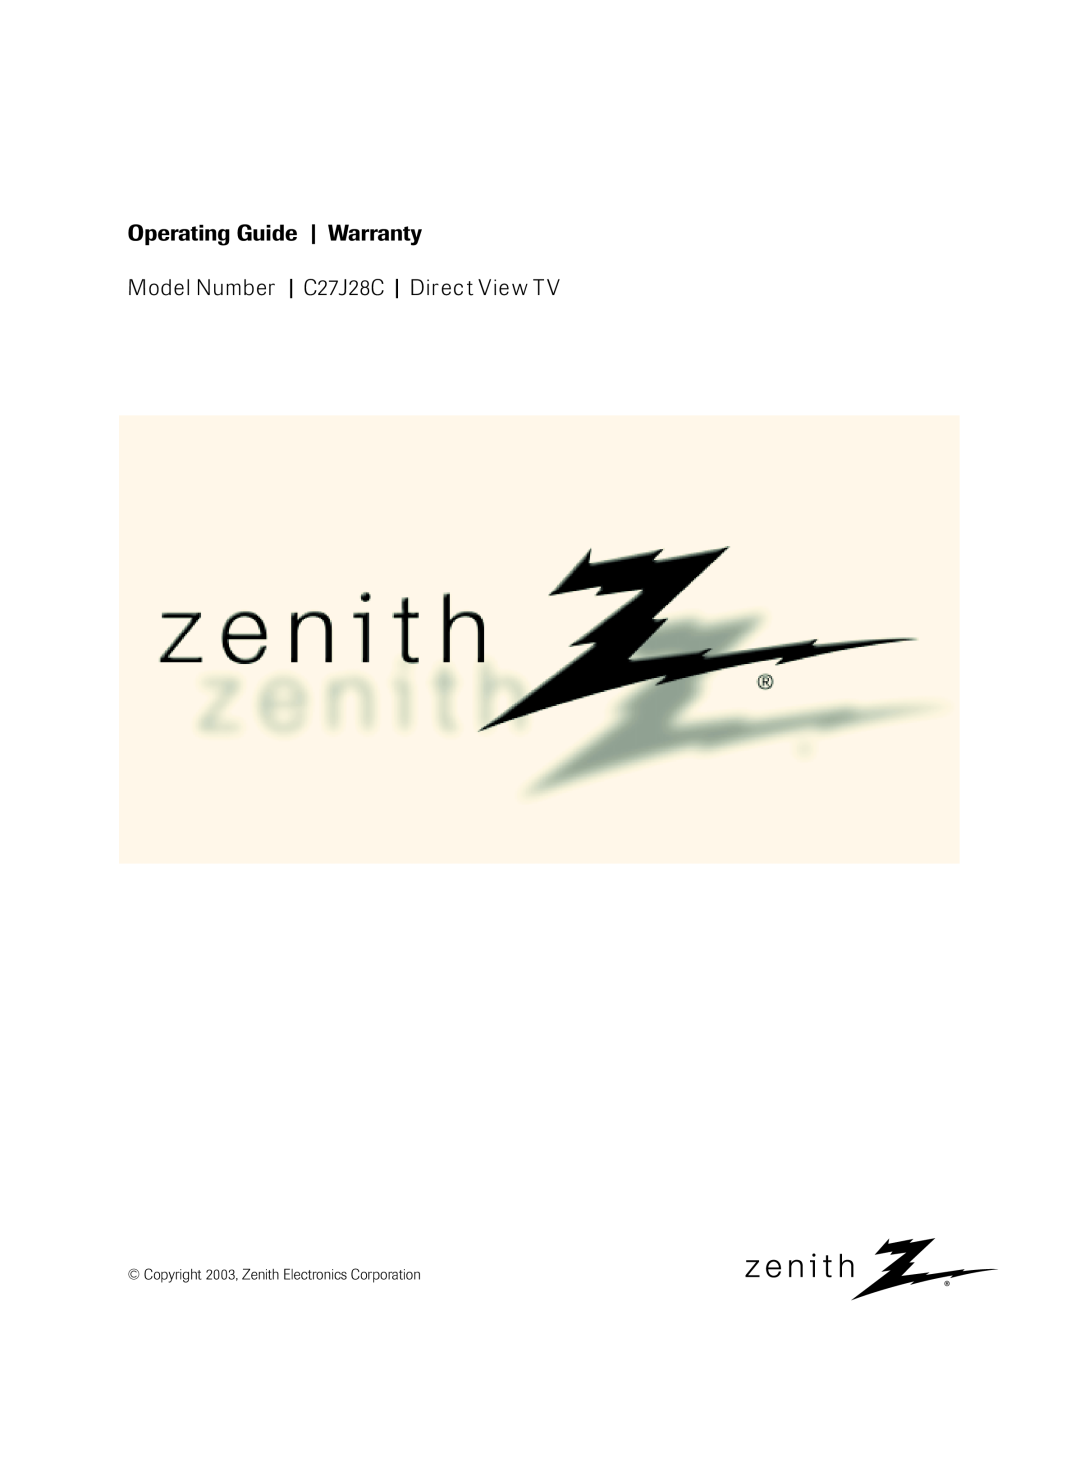 Zenith C27H26B, S2898A, 206-3923 warranty Operating Guide, Warranty, Model Number, C27J28C, Direc t Vie w T 